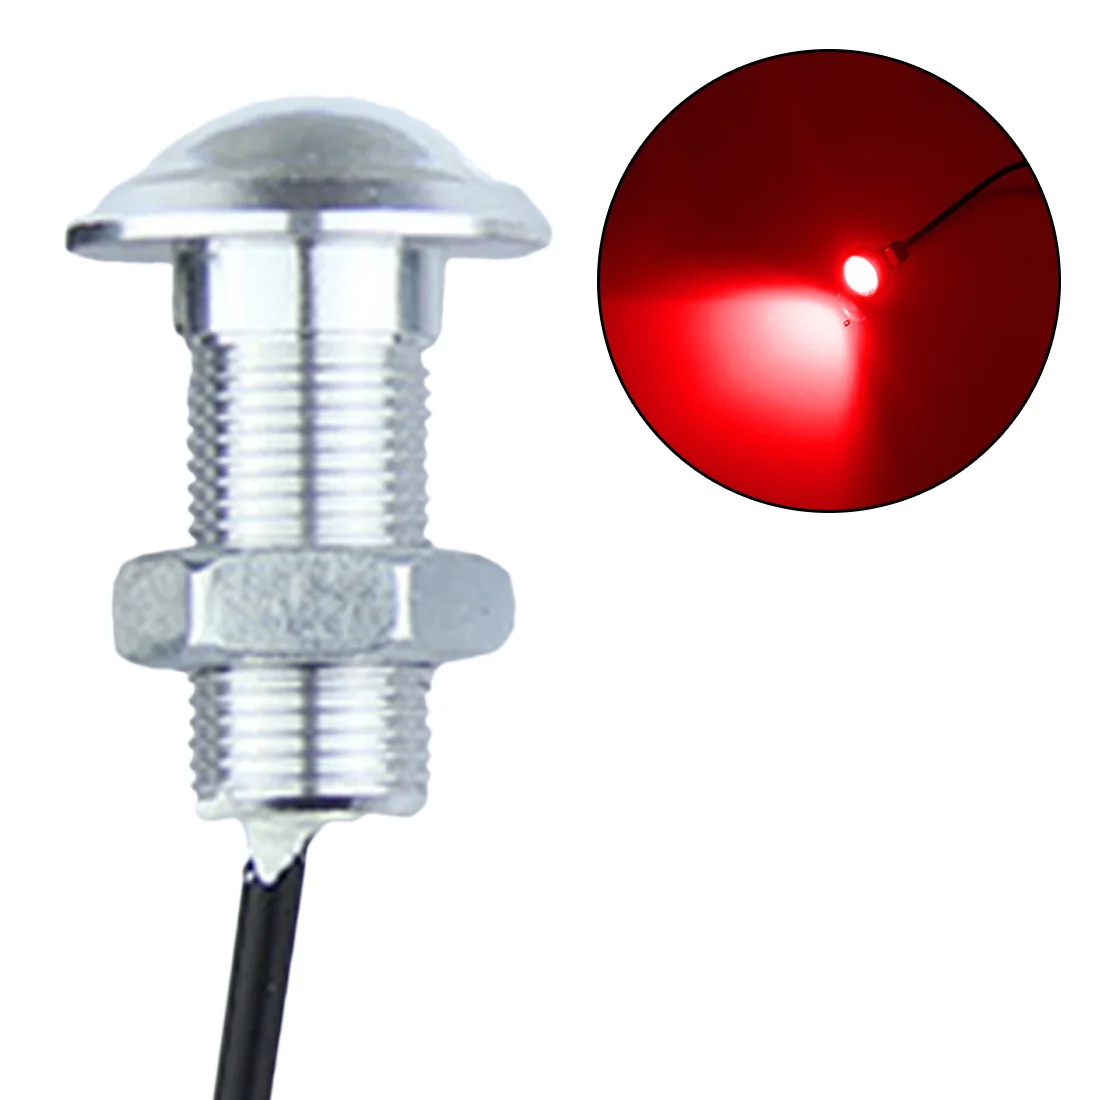 Tonewan 1 шт. водонепроницаемый ультра тонкий 2,3 см 12 В Автомобильный светодиодный DRL Дневной ходовой светильник источник лампа "Орлиный глаз" парковПредупреждение светильник - Цвет: Красный